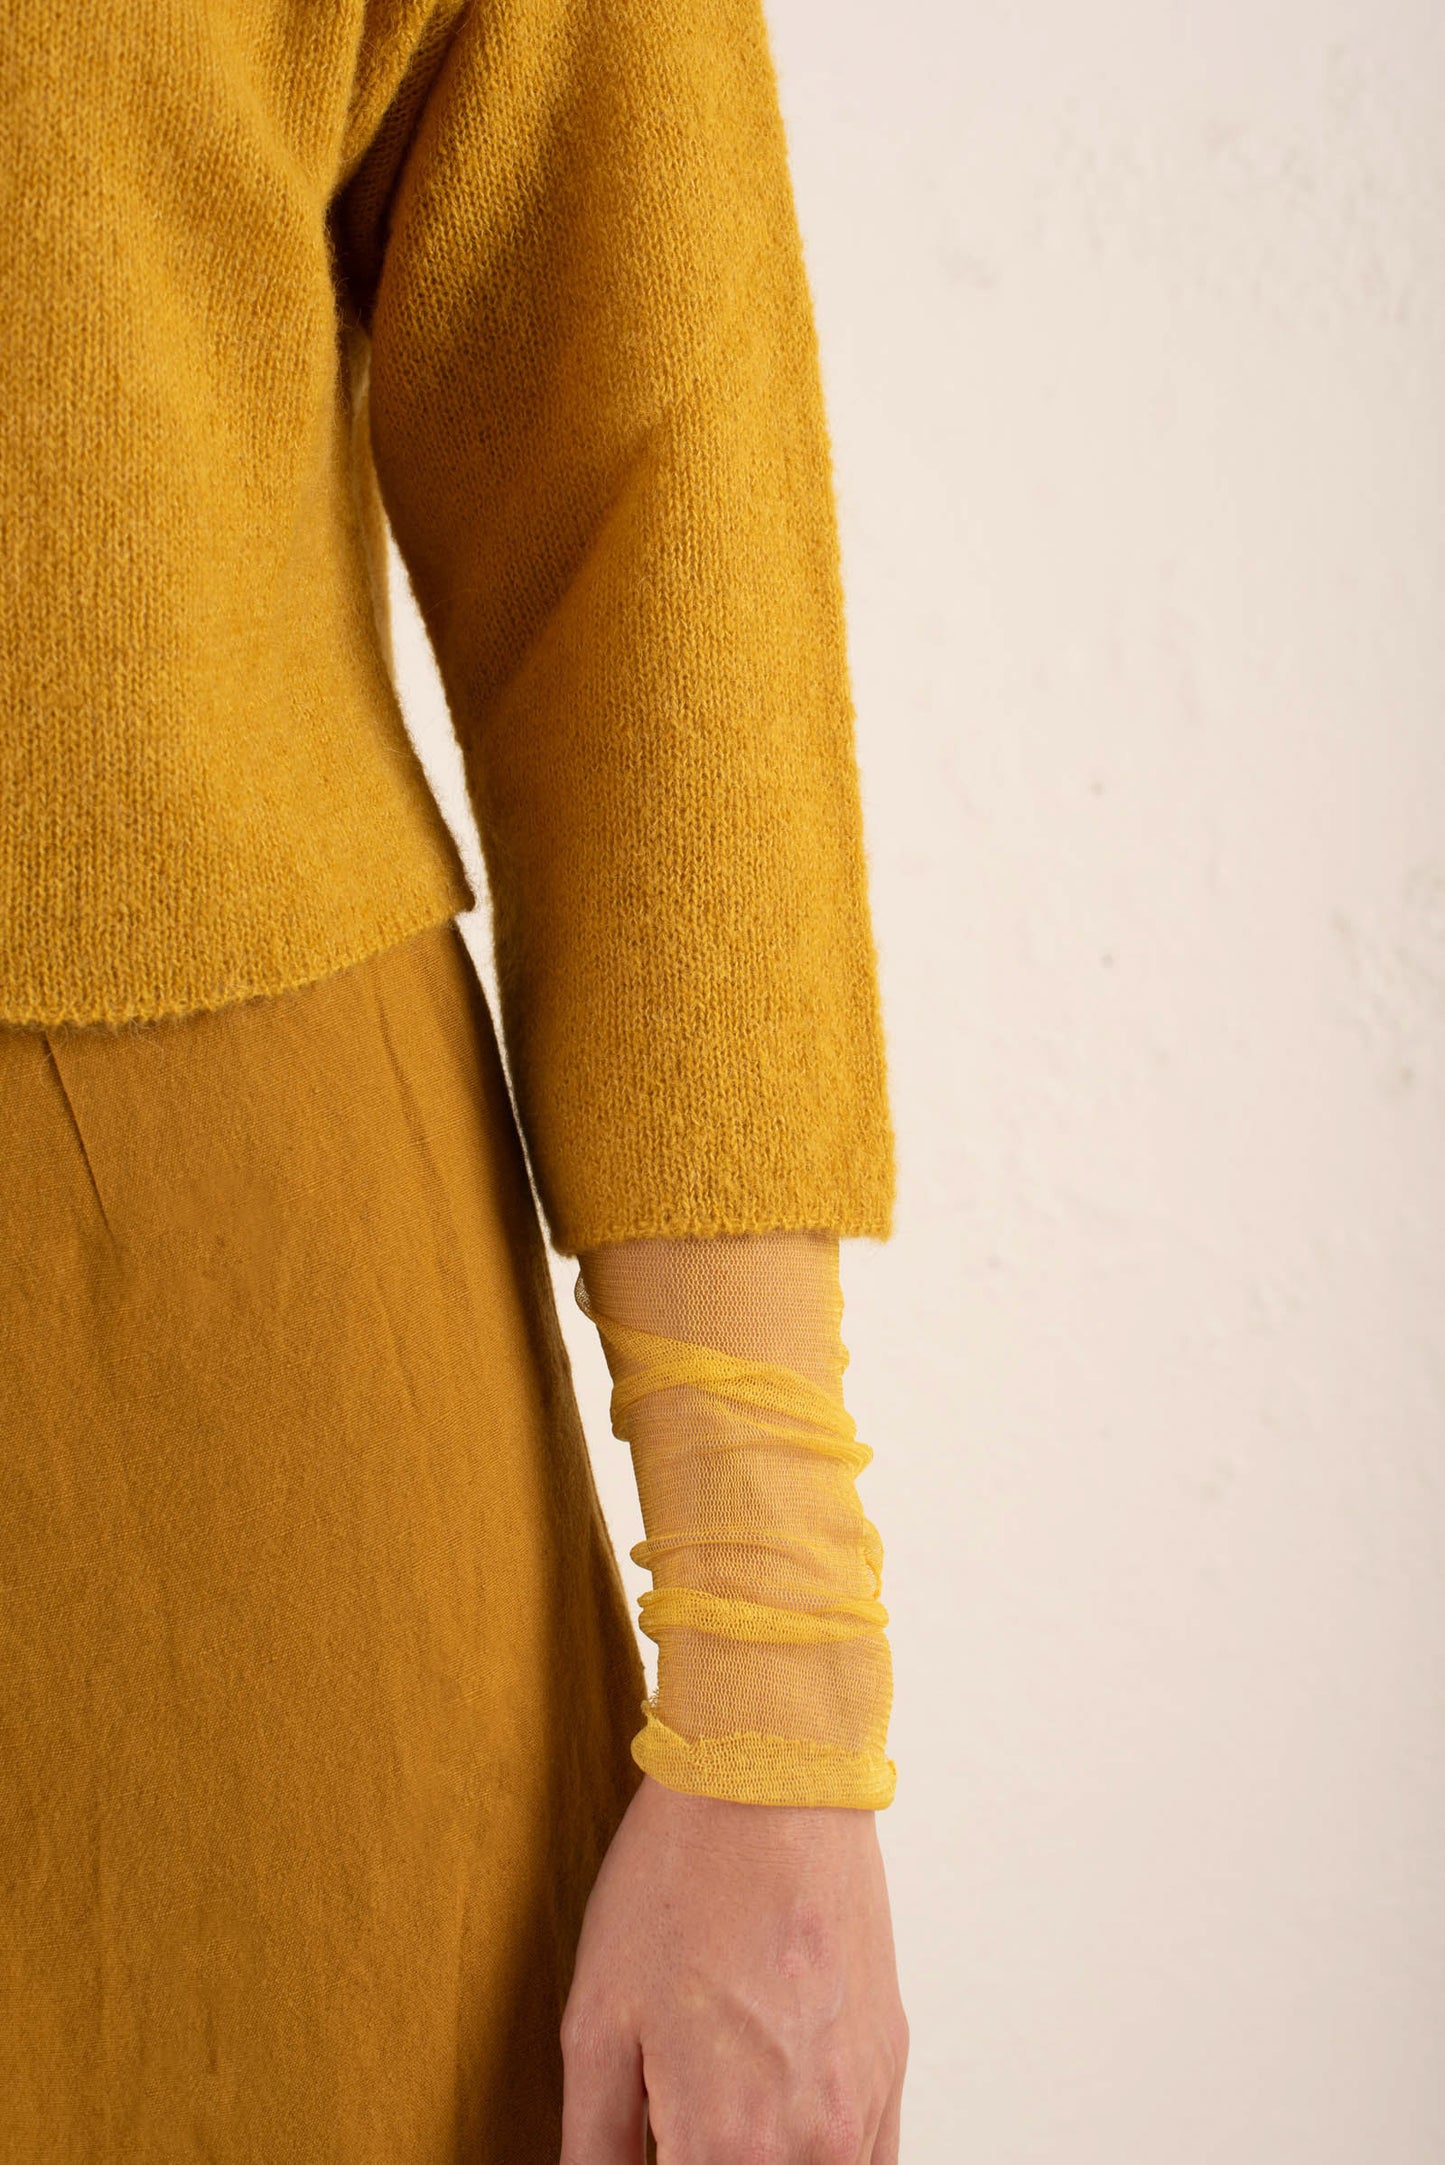 Mar, chaqueta de punto de alpaca, cachemir y seda amarillo